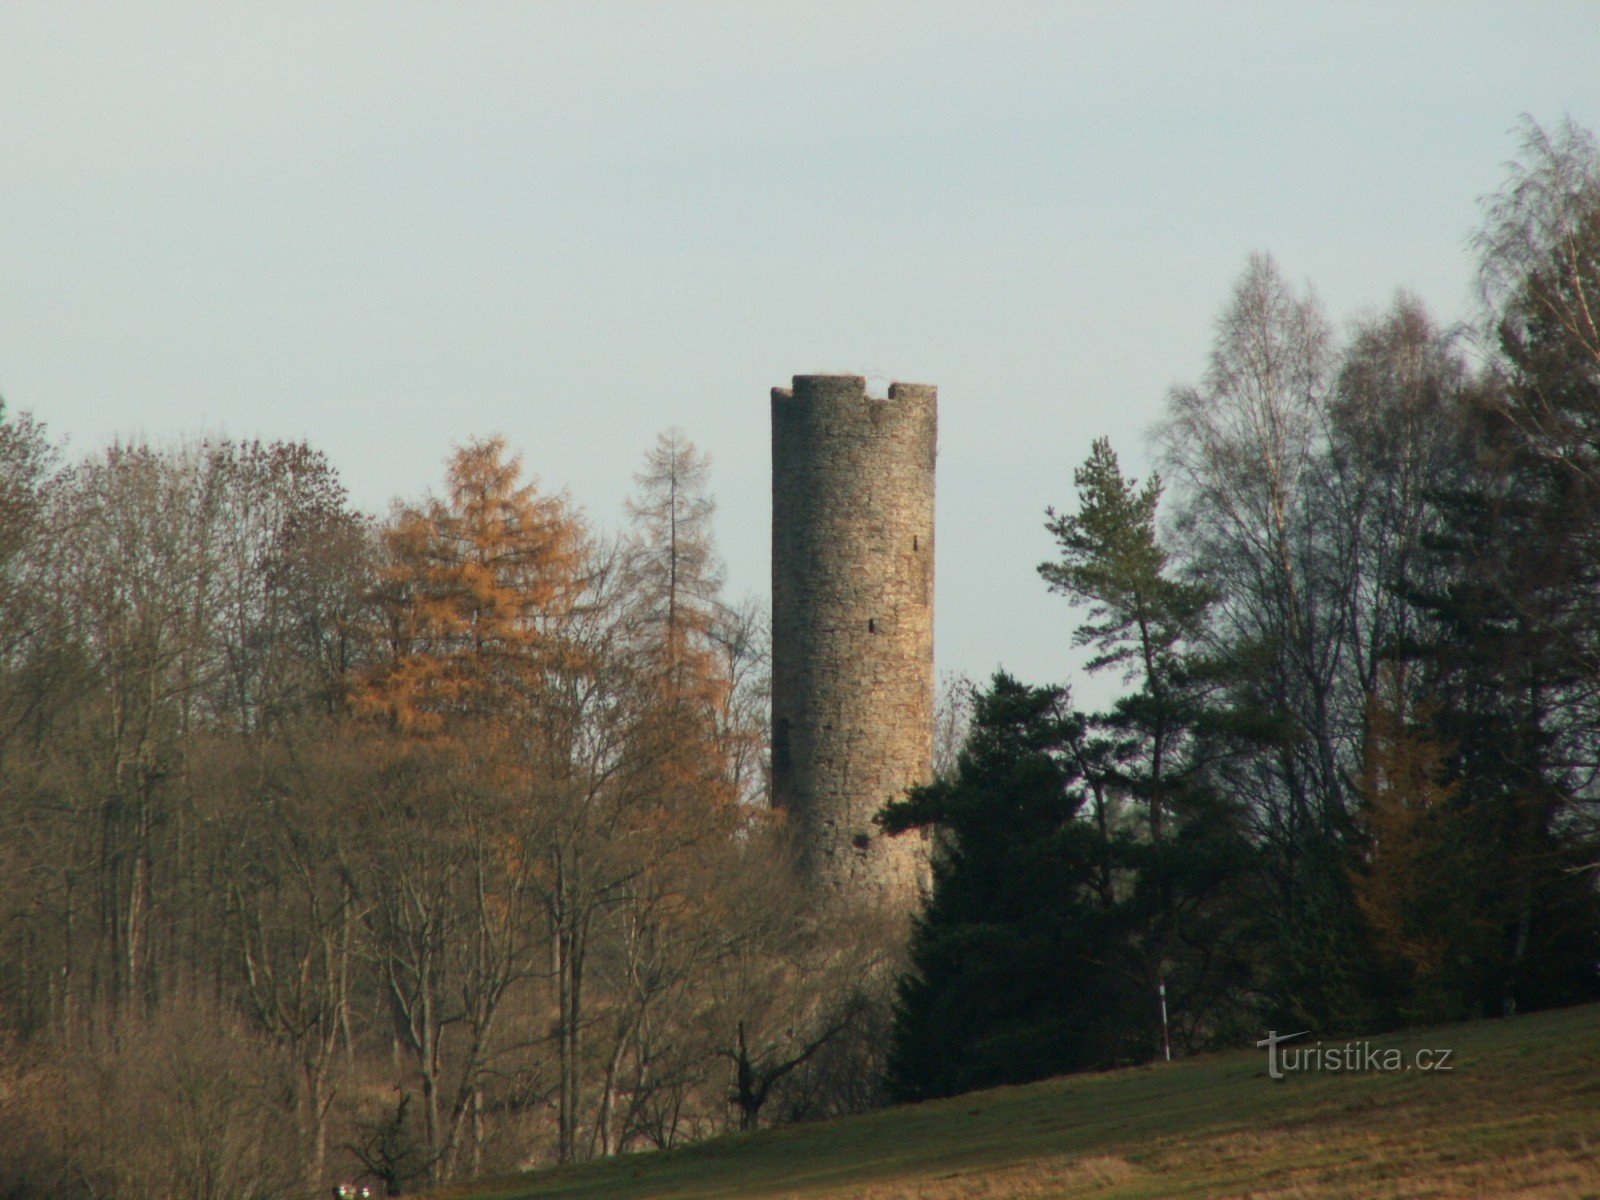 Tháp của lâu đài Neuberg trước đây